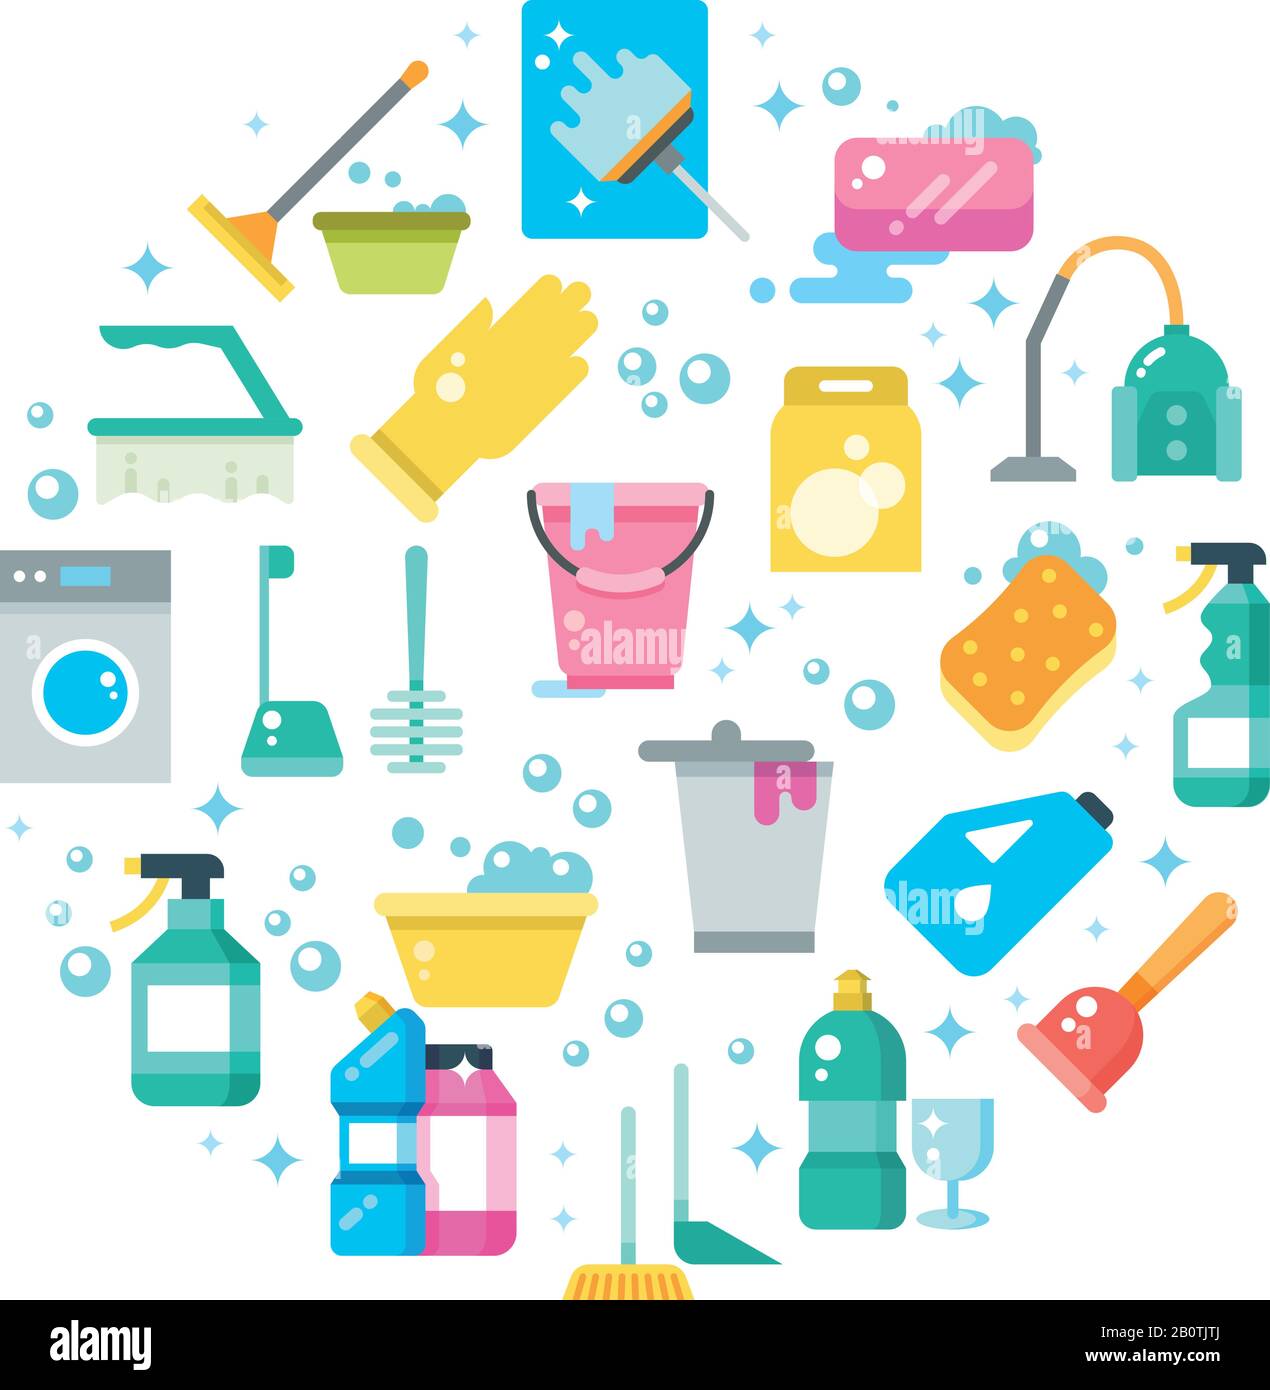 Nettoyez le concept de maison avec les icônes vectorielles des outils de nettoyage et de lavage. Illustration de l'équipement d'entretien ménager, du lavage et du nettoyage Illustration de Vecteur